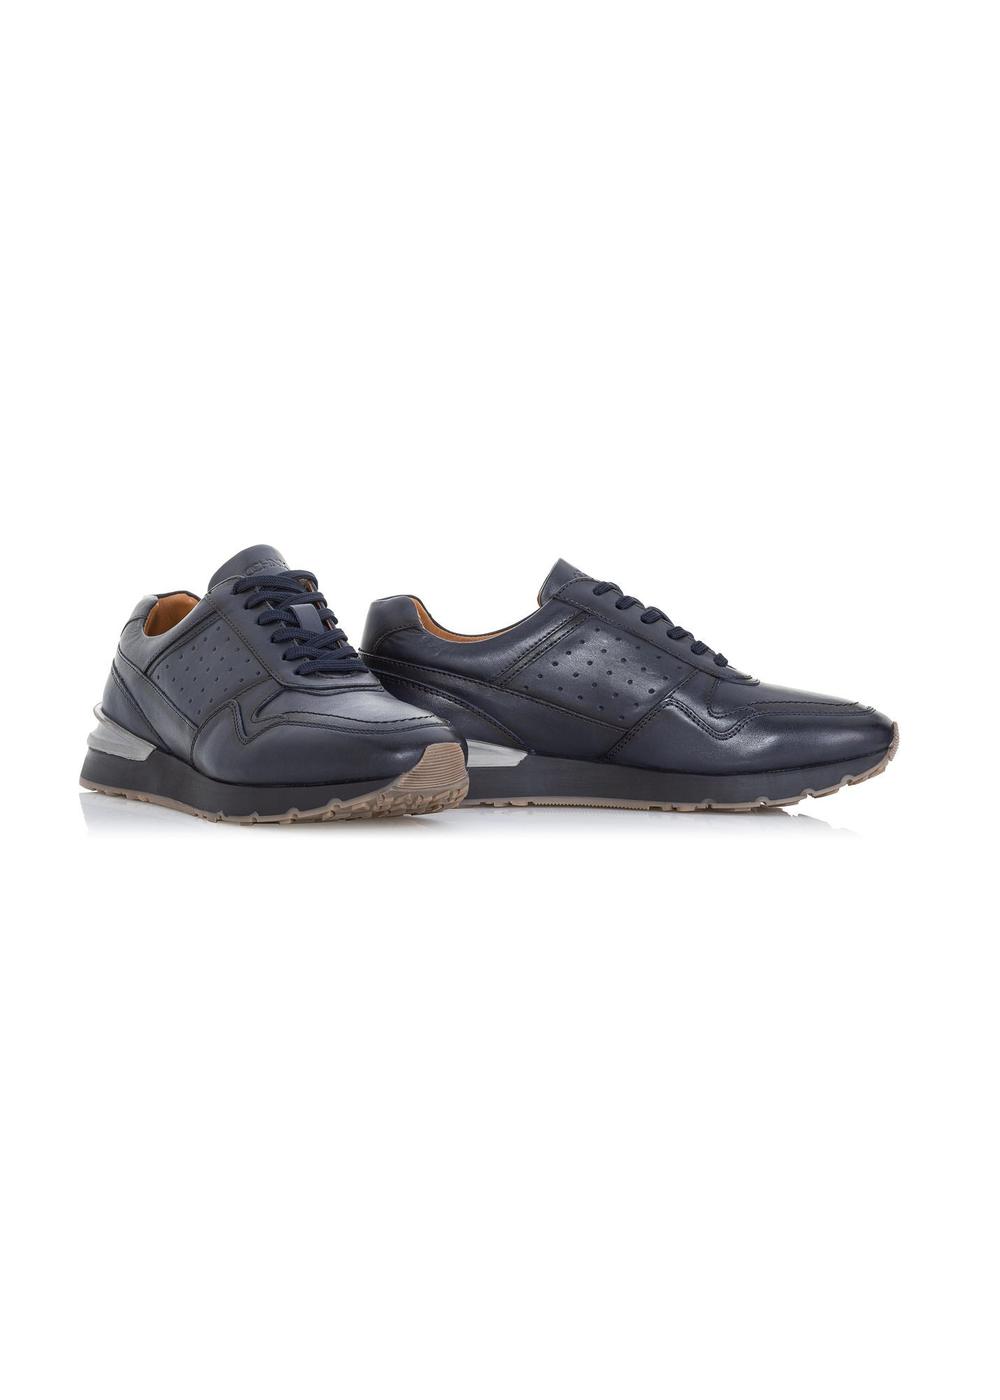 Granatowe skórzane sneakersy męskie BUTYM-0434-68(W23)